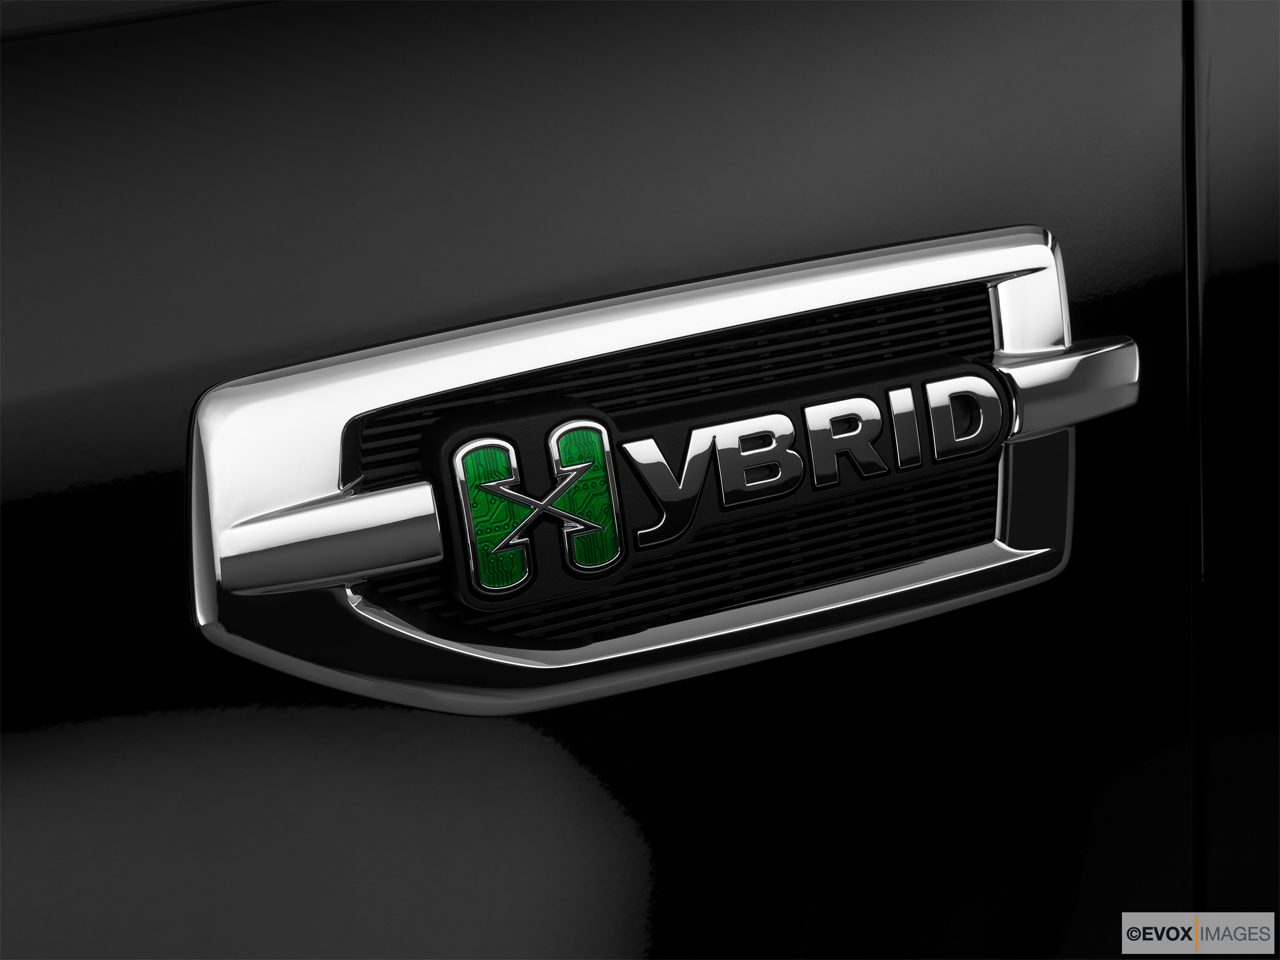 2010 Cadillac Escalade Hybrid Base Exterior Bonus Shots (no set spec) 